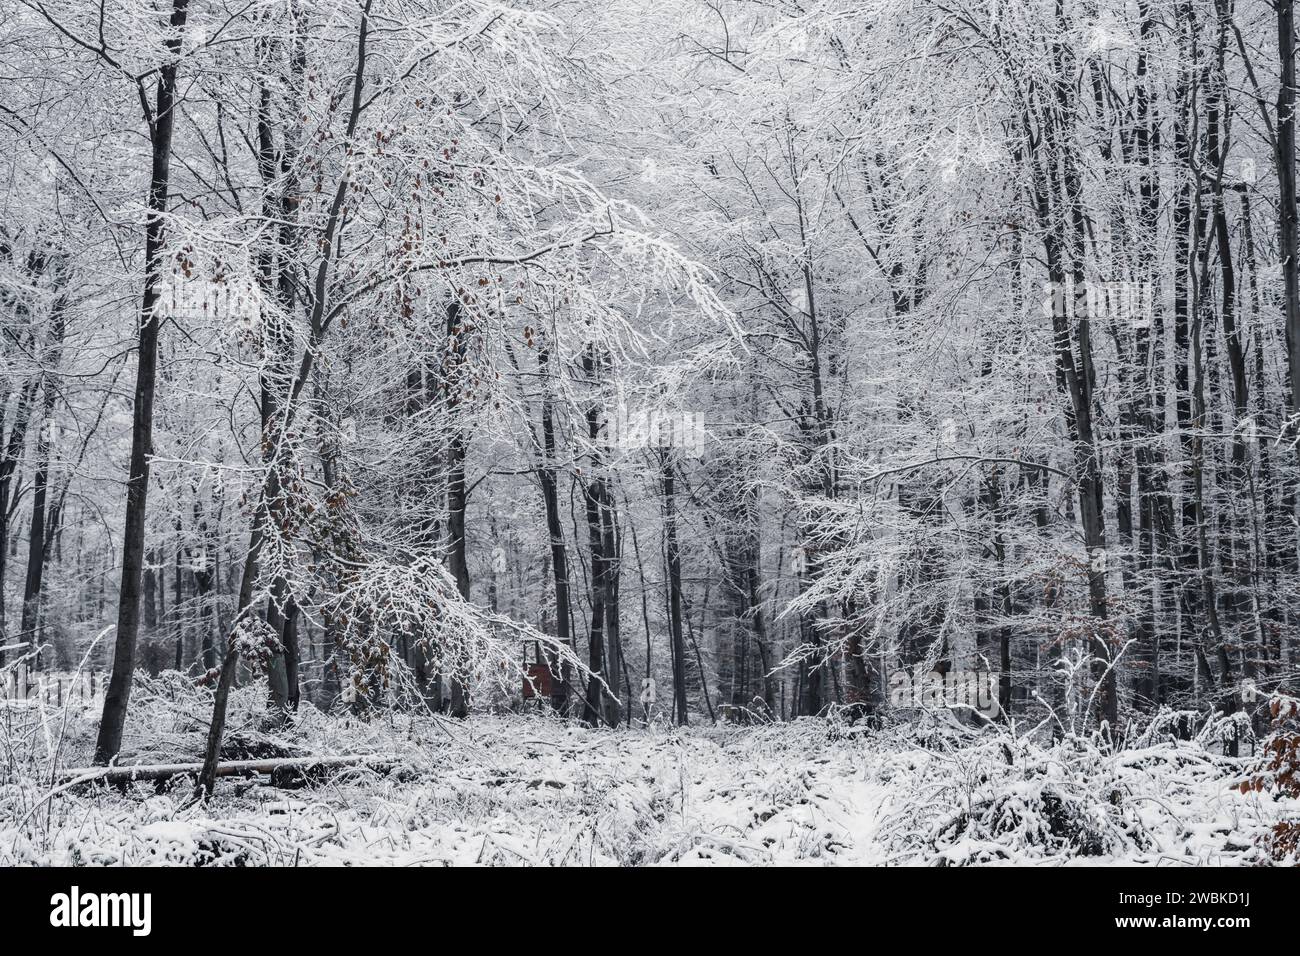 Der erste Schnee im Wald, schneebedeckte schmale Bäume und Äste, winterliche Landschaft, kühle Farben Stockfoto